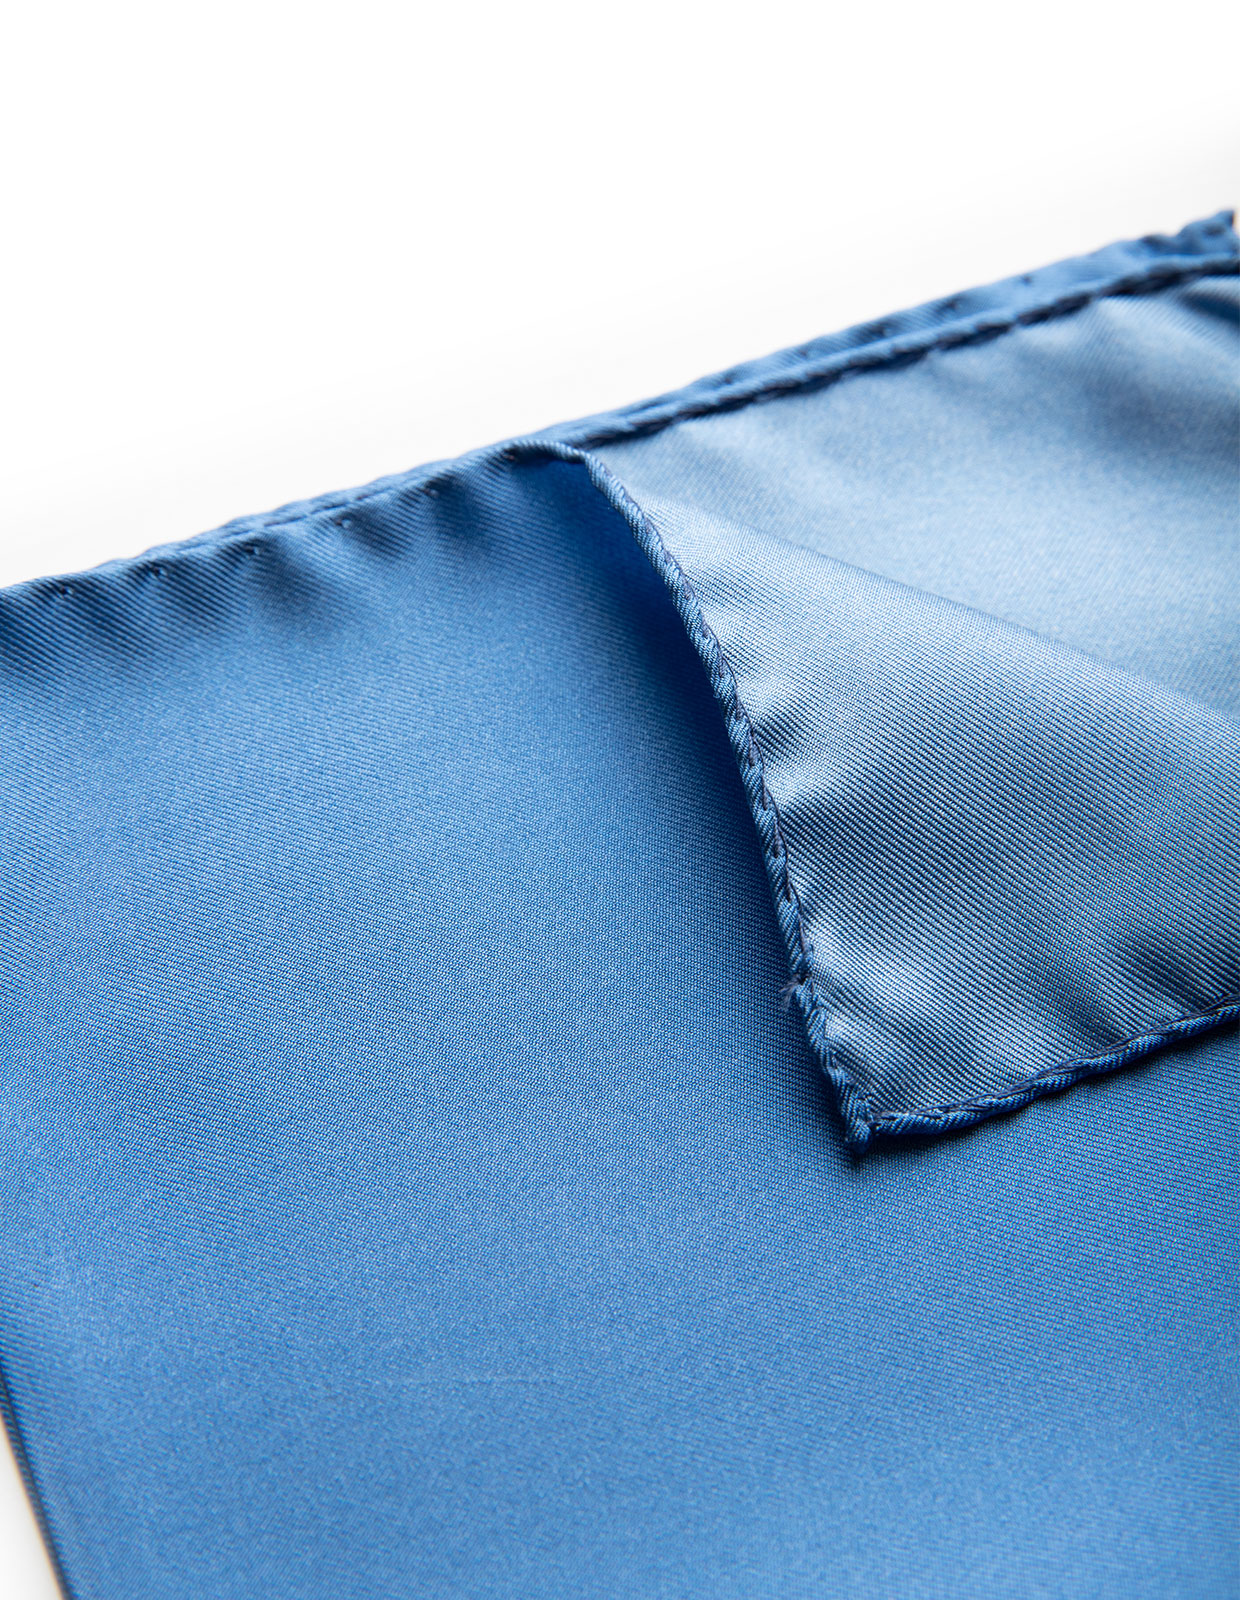 Pocket Square Silk Plain Blue